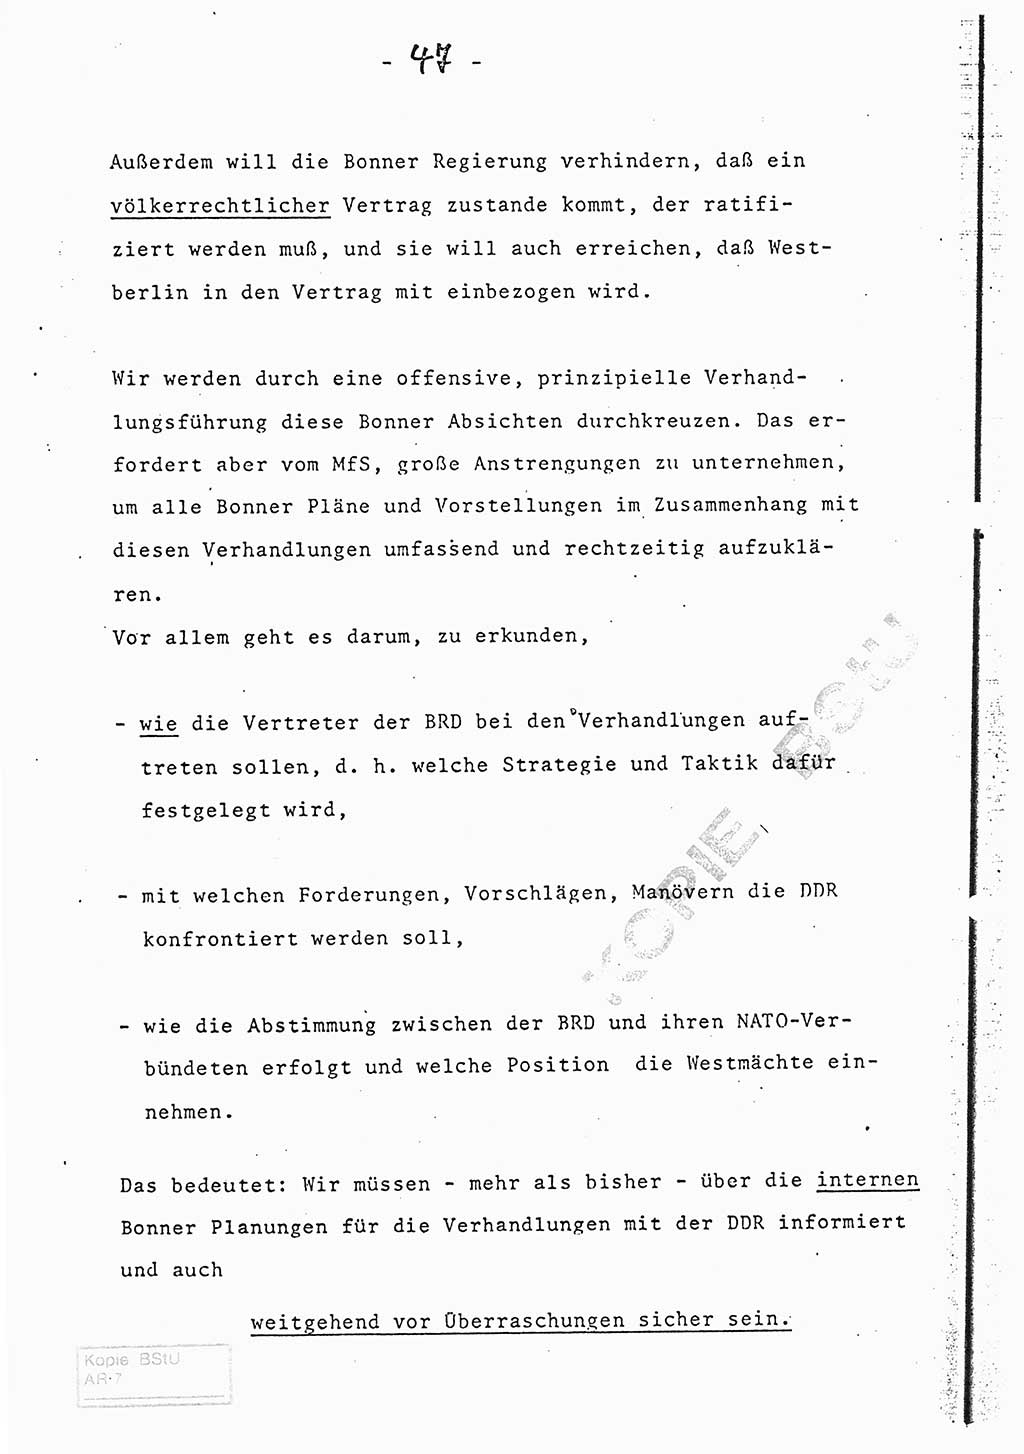 Referat (Entwurf) des Genossen Minister (Generaloberst Erich Mielke) auf der Dienstkonferenz 1972, Ministerium für Staatssicherheit (MfS) [Deutsche Demokratische Republik (DDR)], Der Minister, Geheime Verschlußsache (GVS) 008-150/72, Berlin 25.2.1972, Seite 47 (Ref. Entw. DK MfS DDR Min. GVS 008-150/72 1972, S. 47)